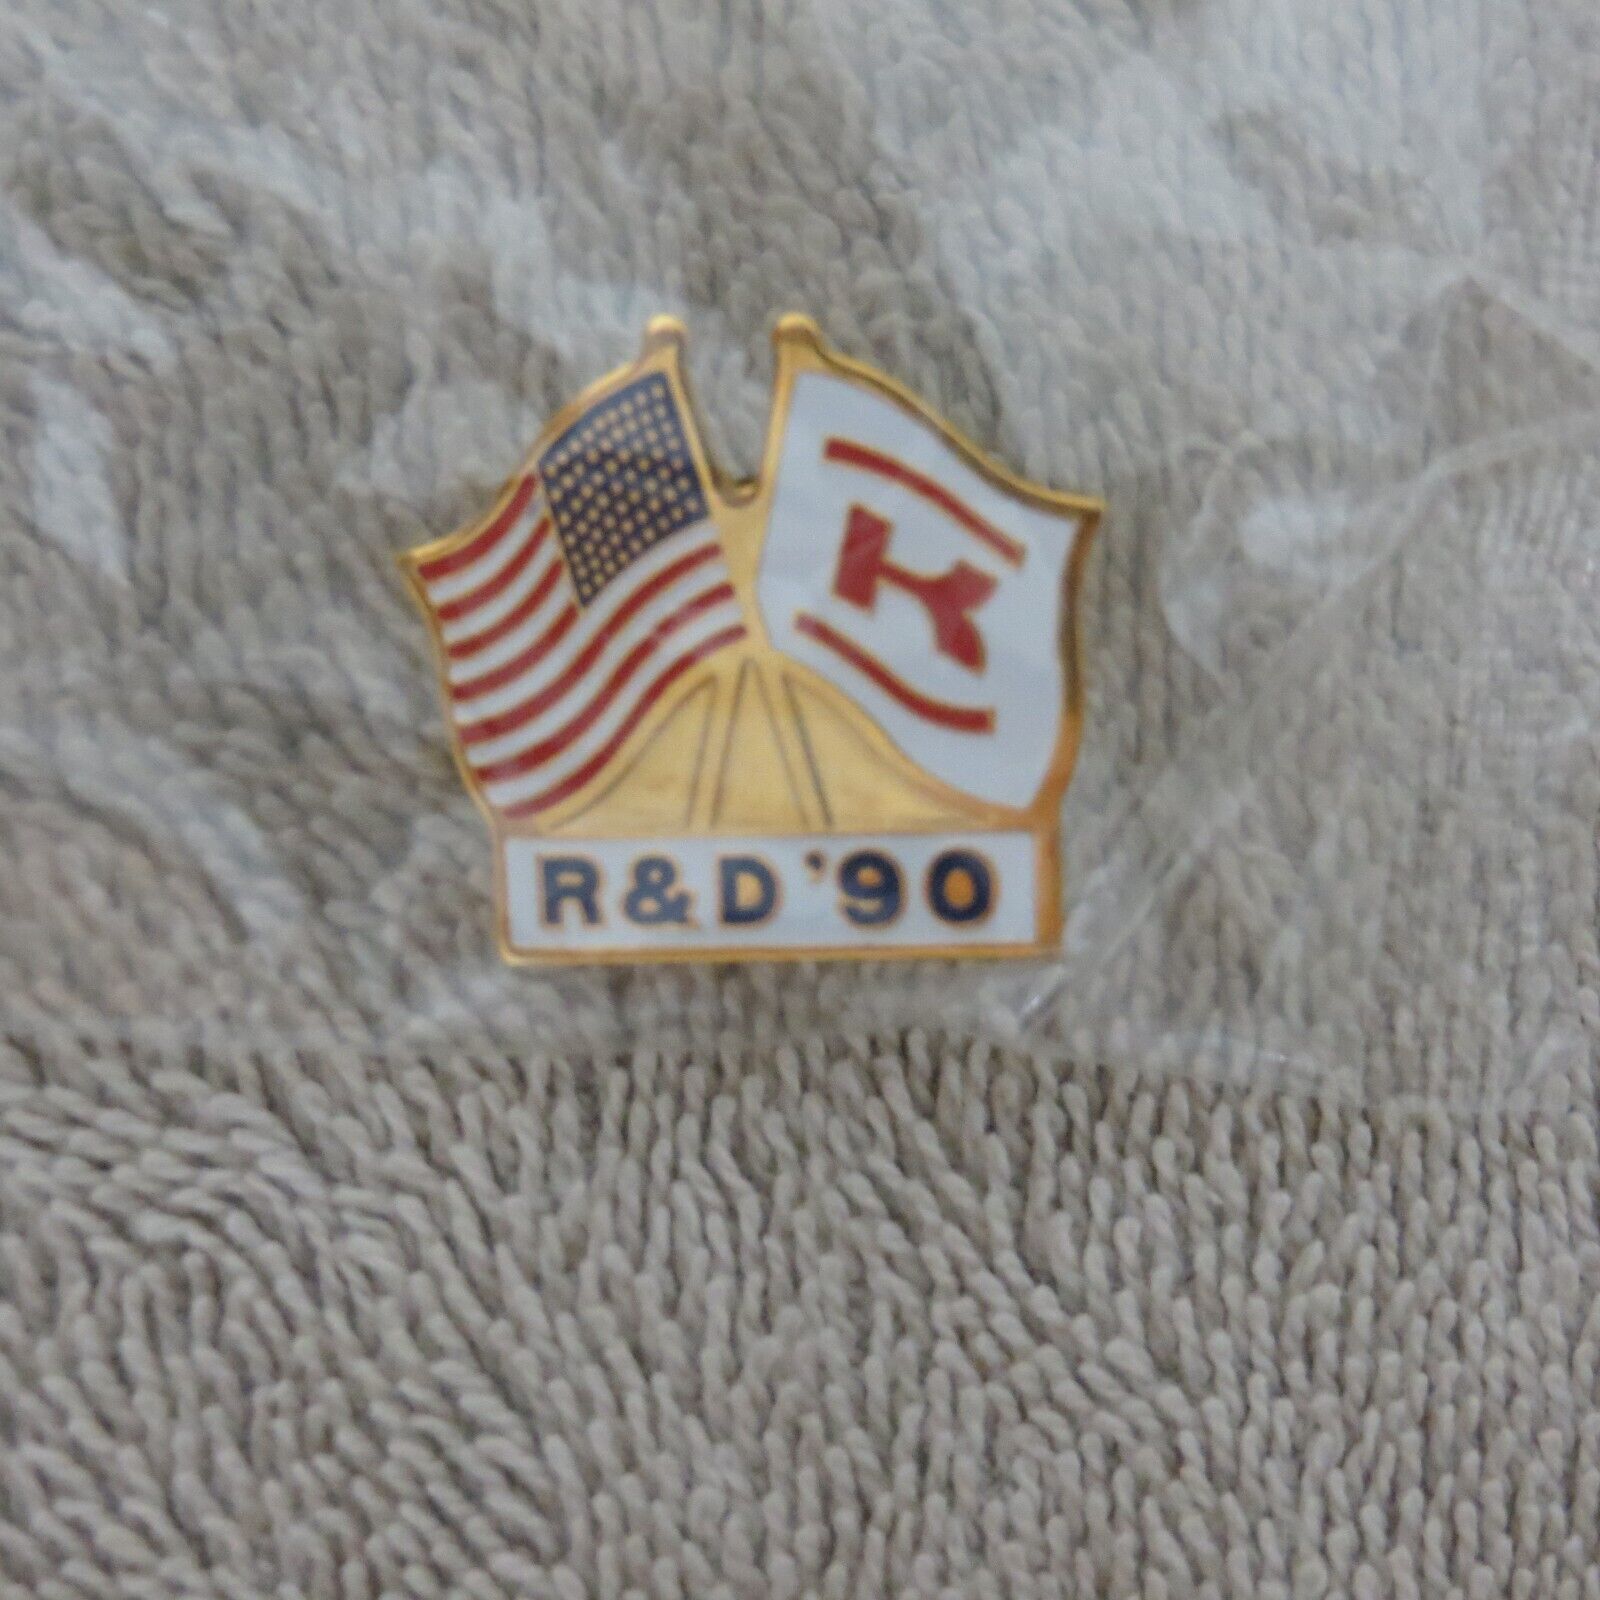 Vintage/Rare 1990 Kawasaki R&D Pin - Collectible Dealer Item + Bonus Flag Pin